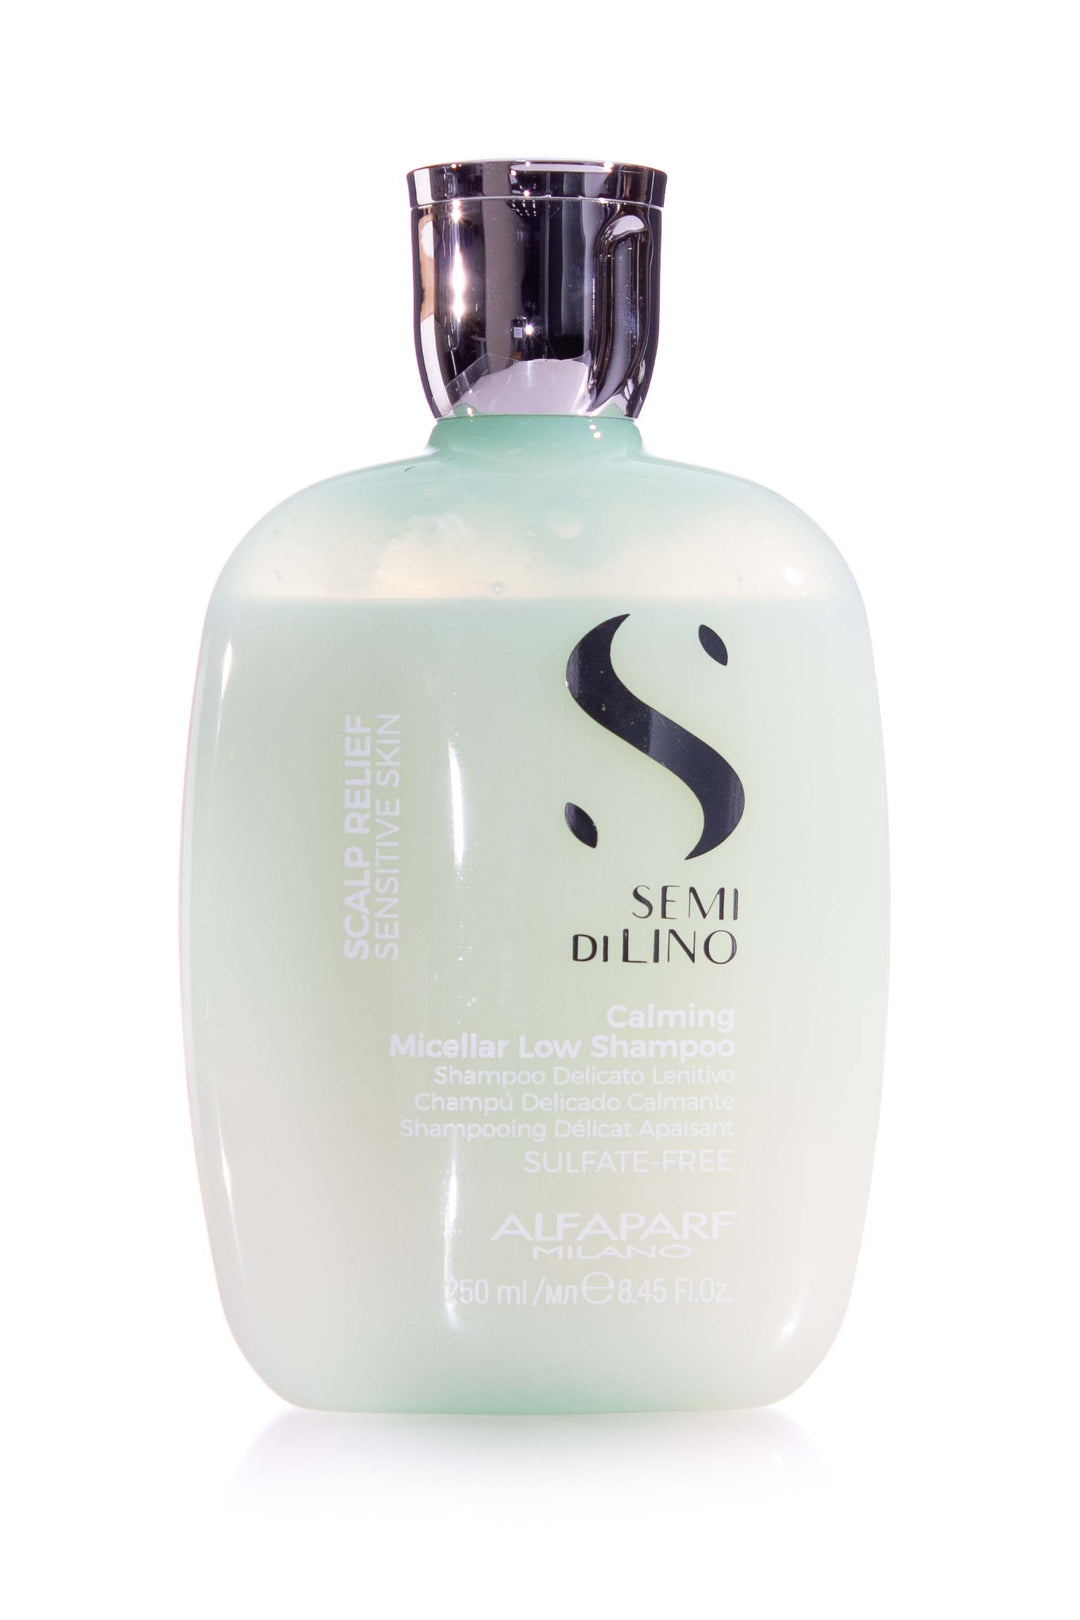 alfaparf-milano-semi-di-lino-scalp-relief-calming-micellar-low-shampoo-250ml